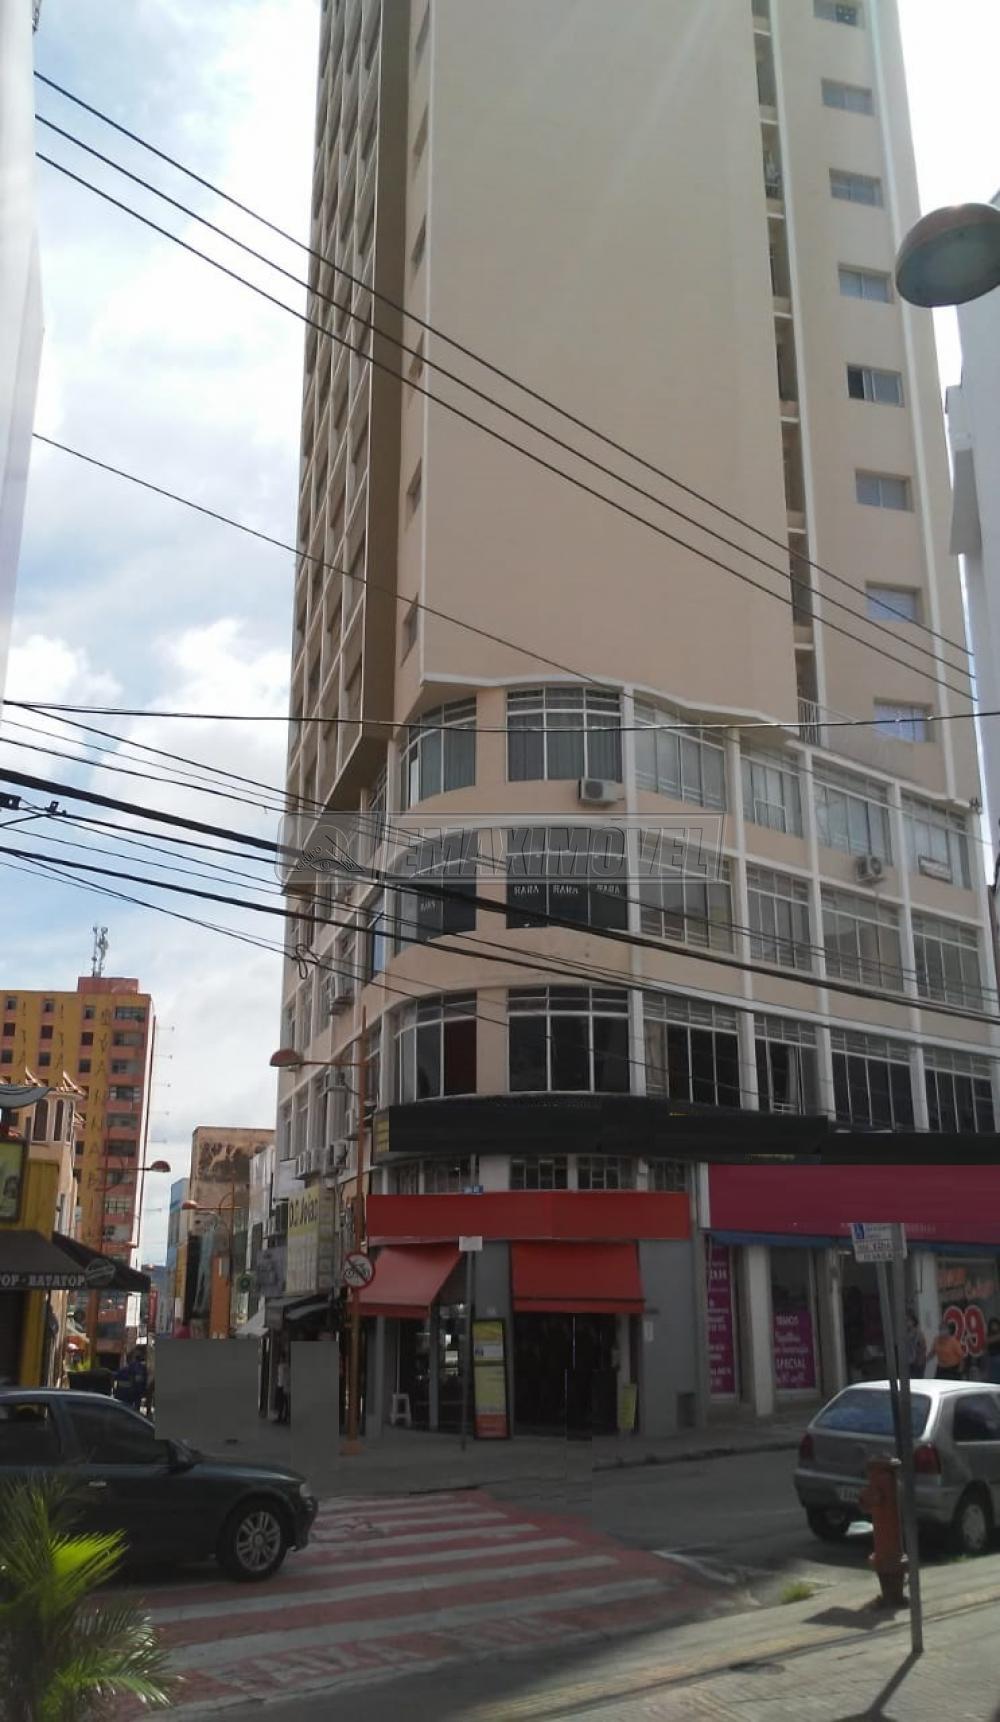 Comprar Apartamento / Padrão em Sorocaba R$ 320.000,00 - Foto 1